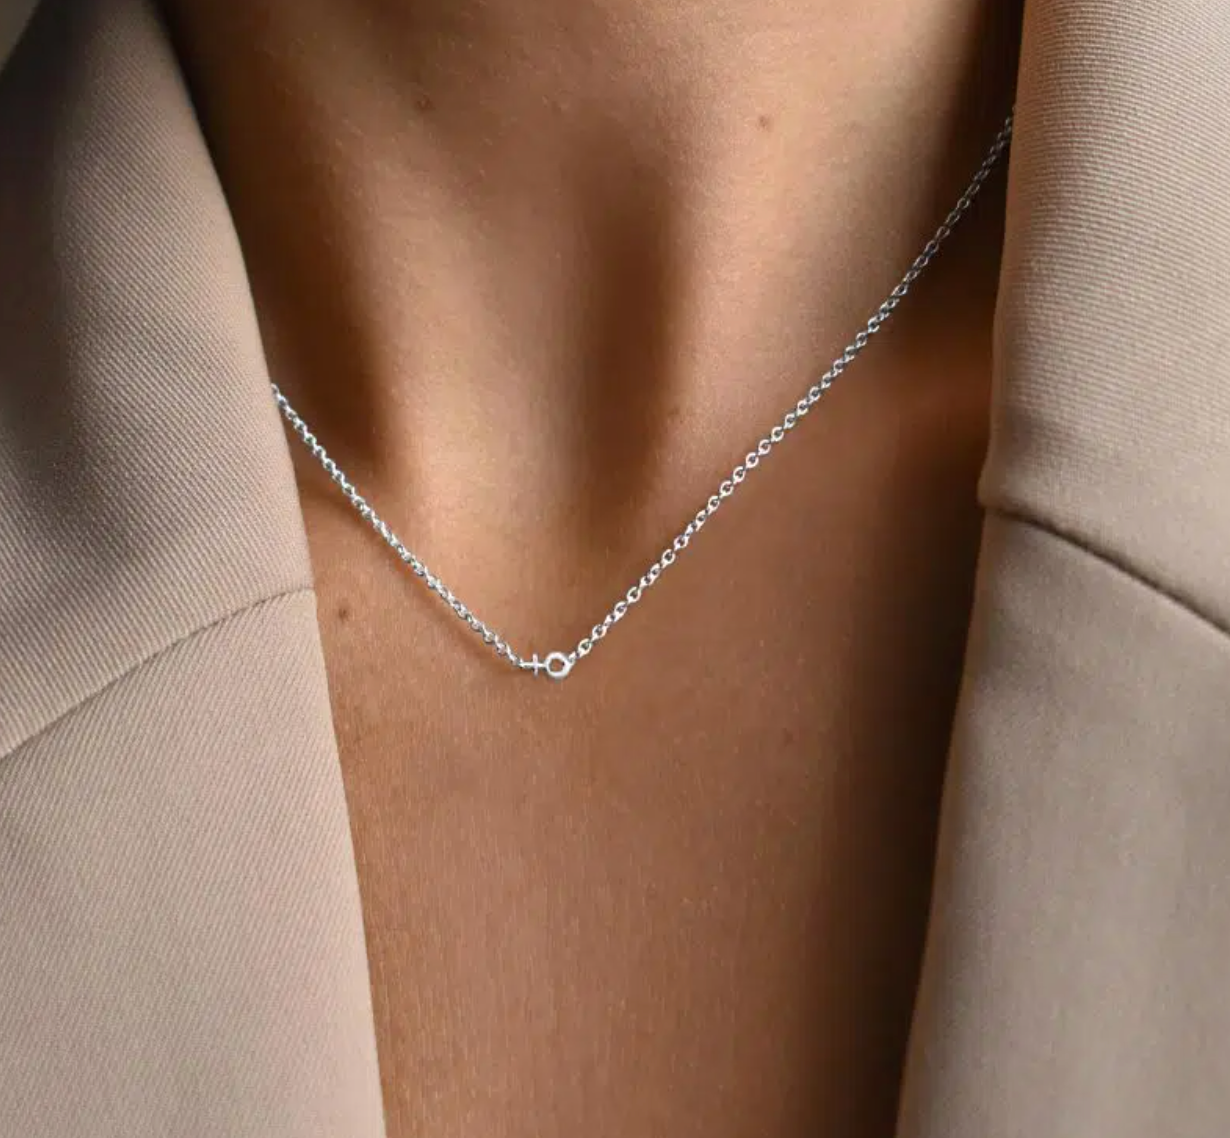 Women Unite drop necklace